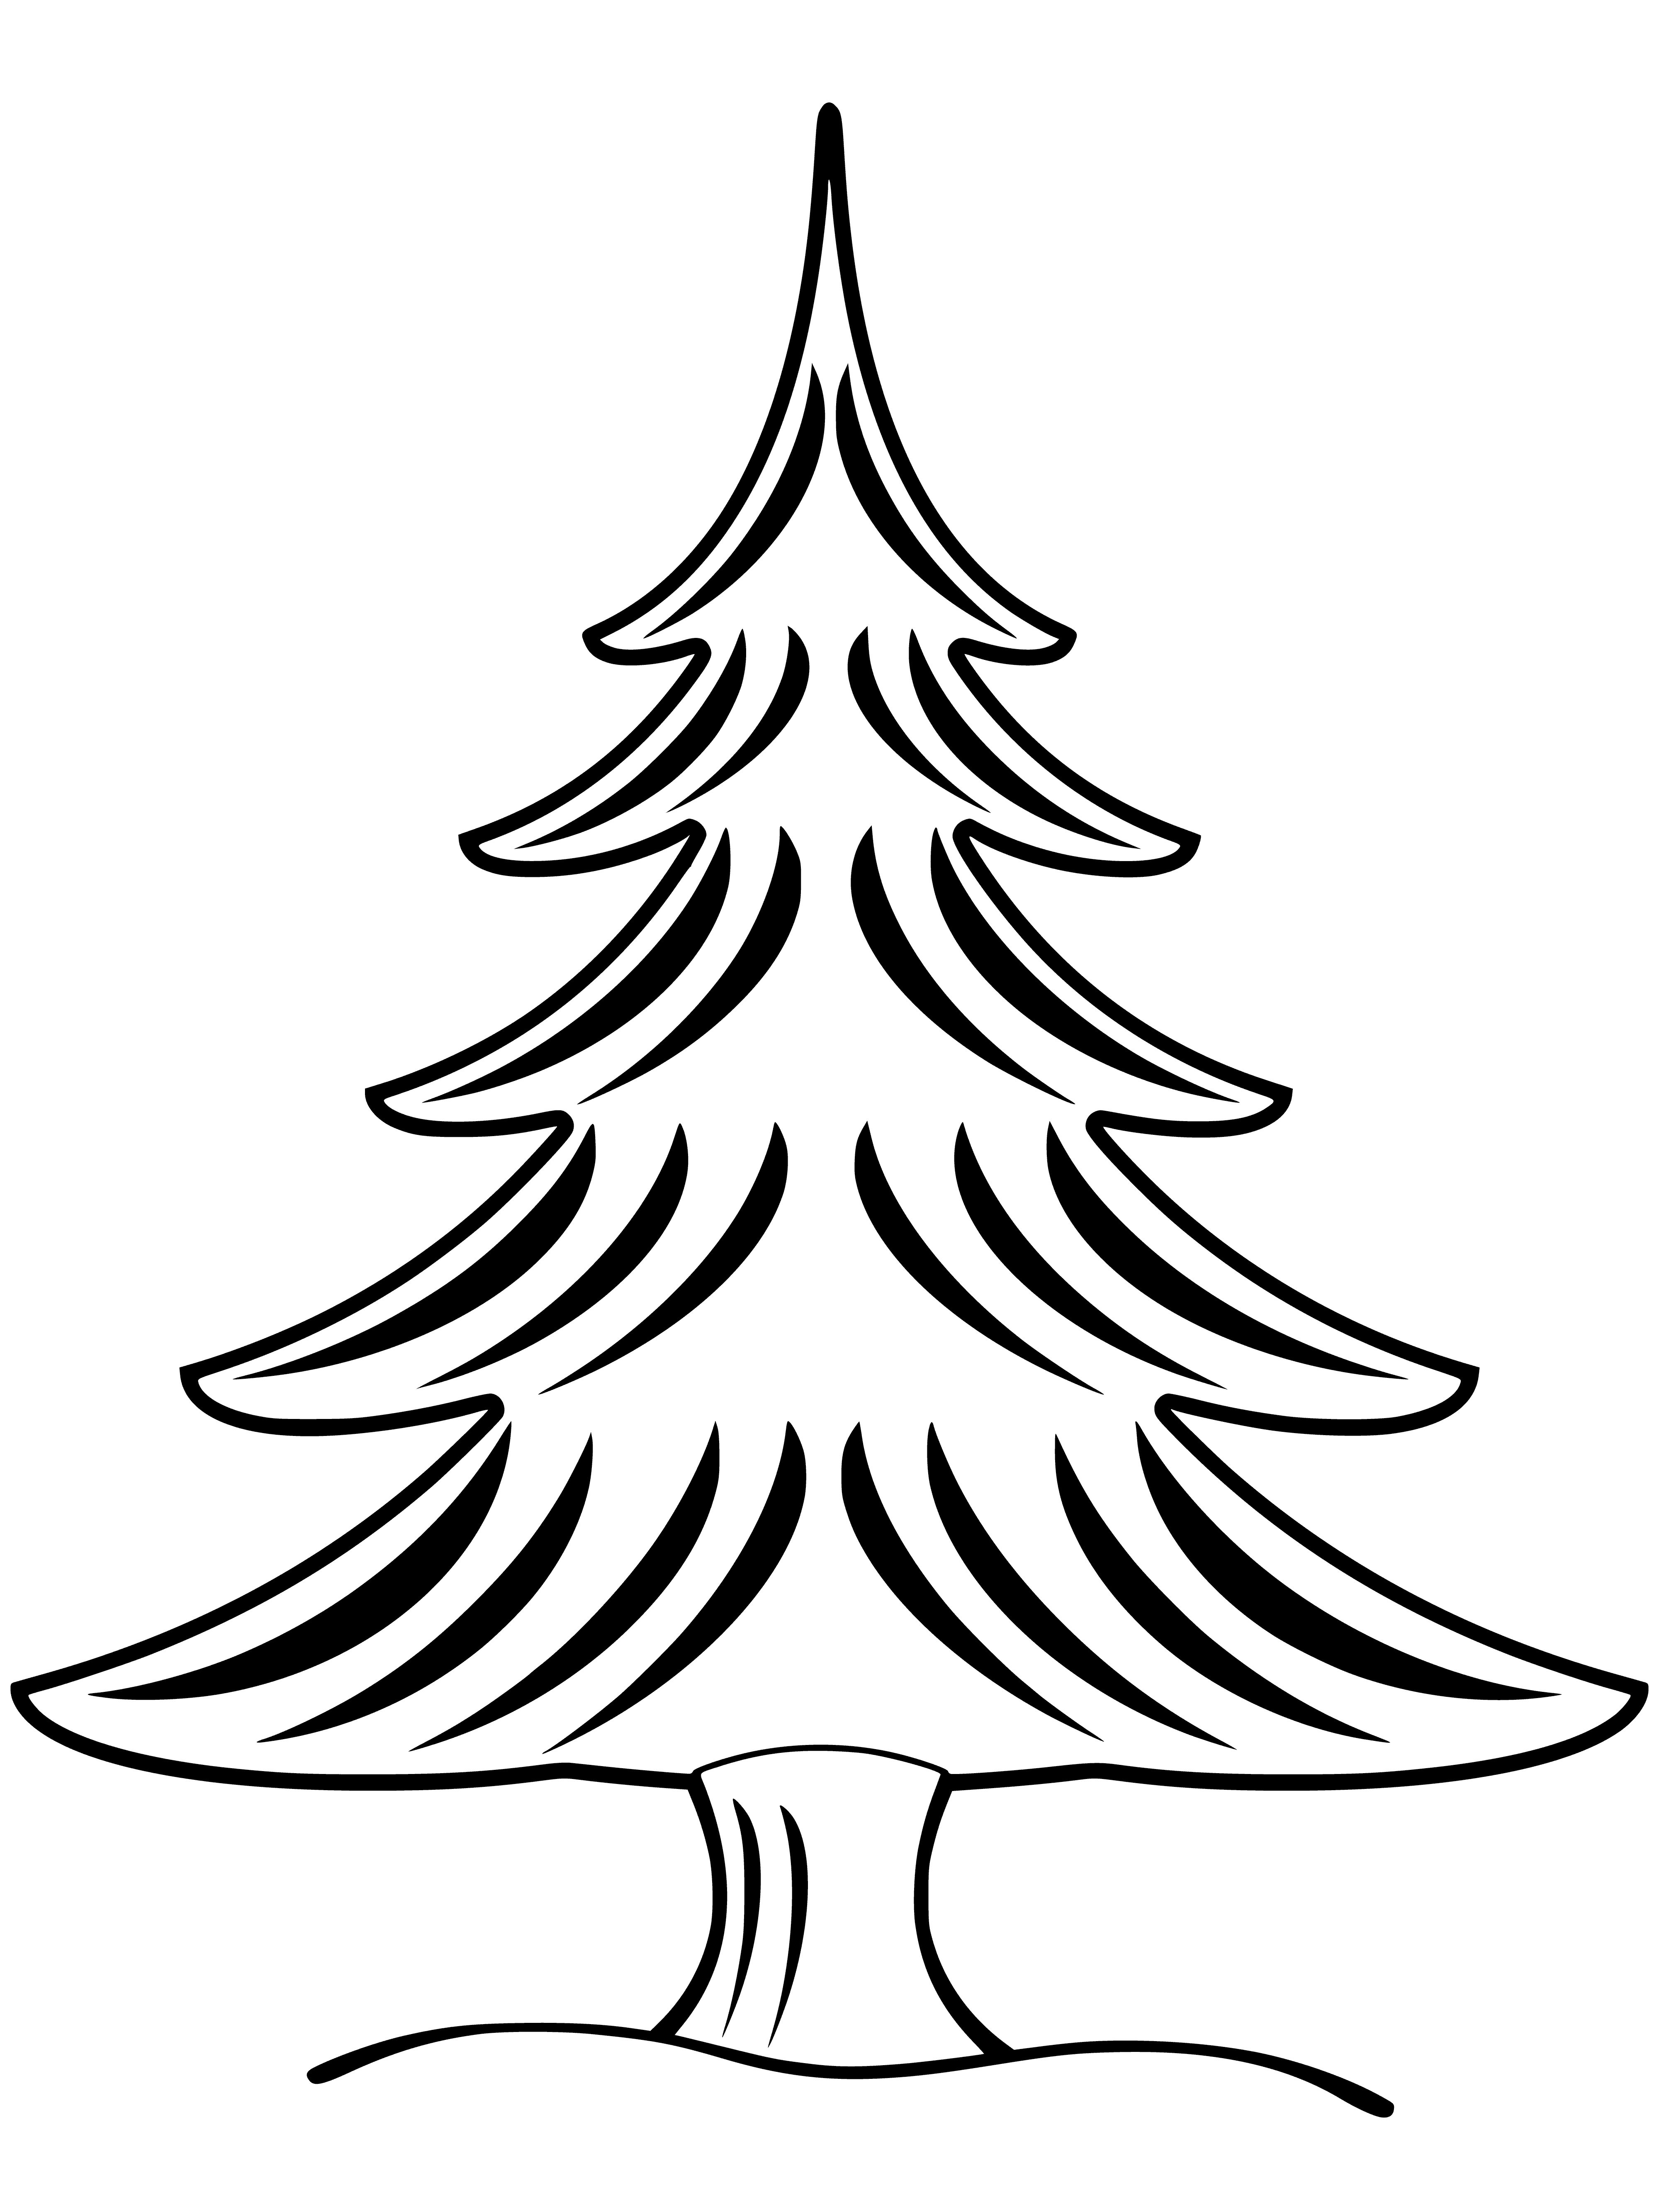 Schmücke den Weihnachtsbaum! Malseite